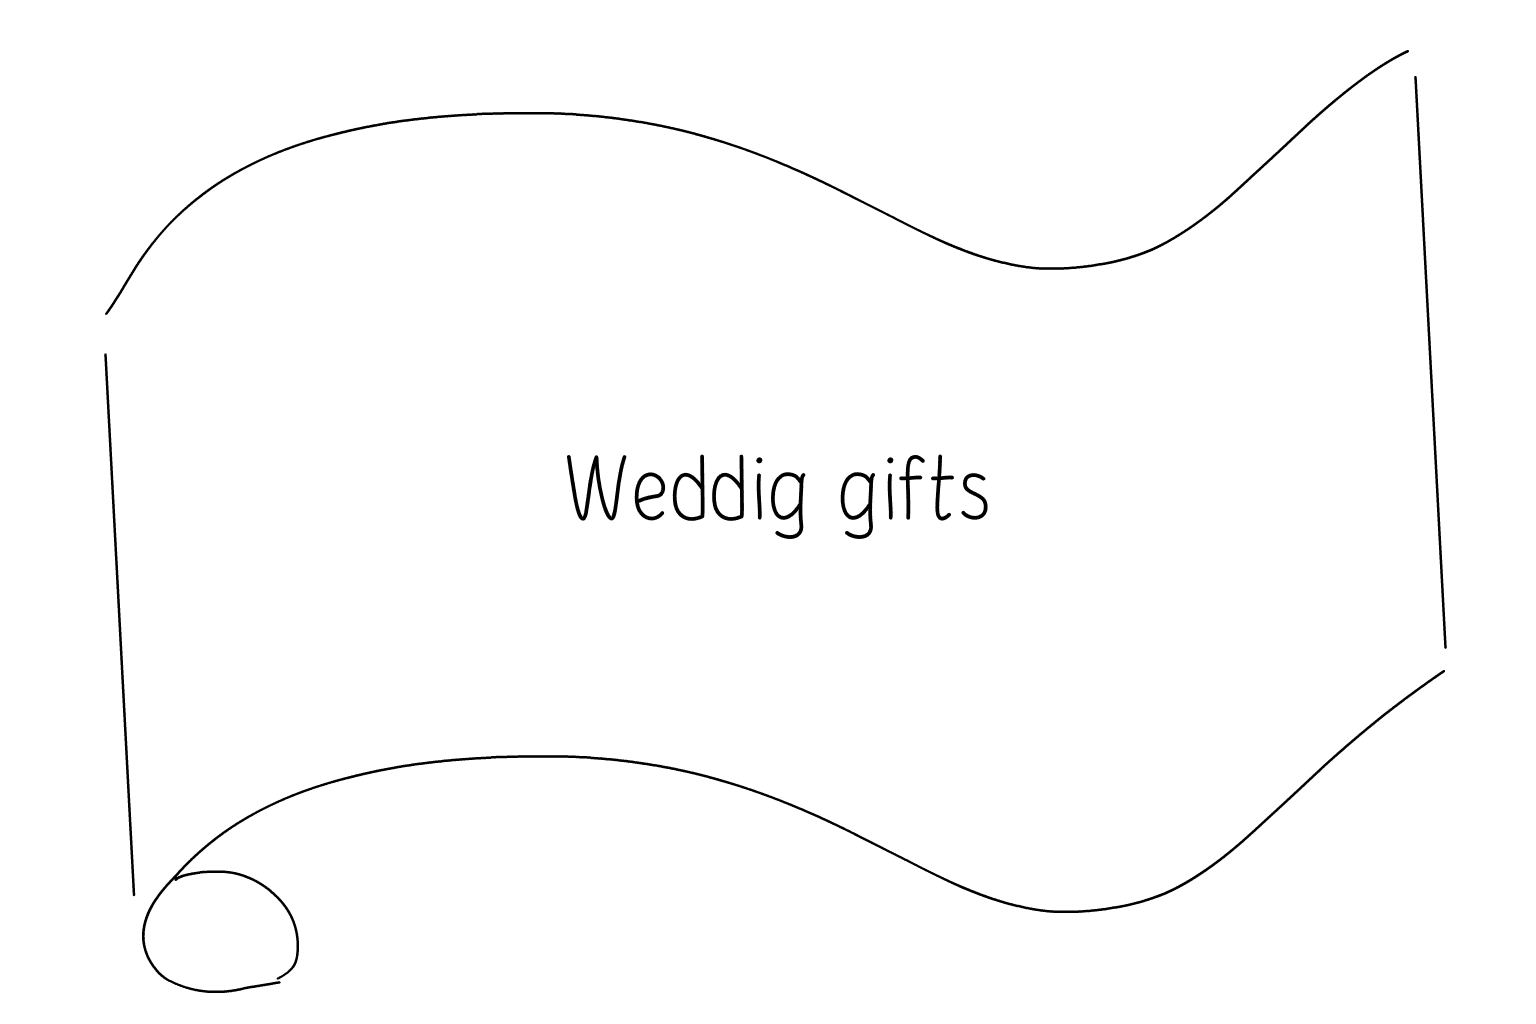 Иллюстрация свадебных сувениров и подарков